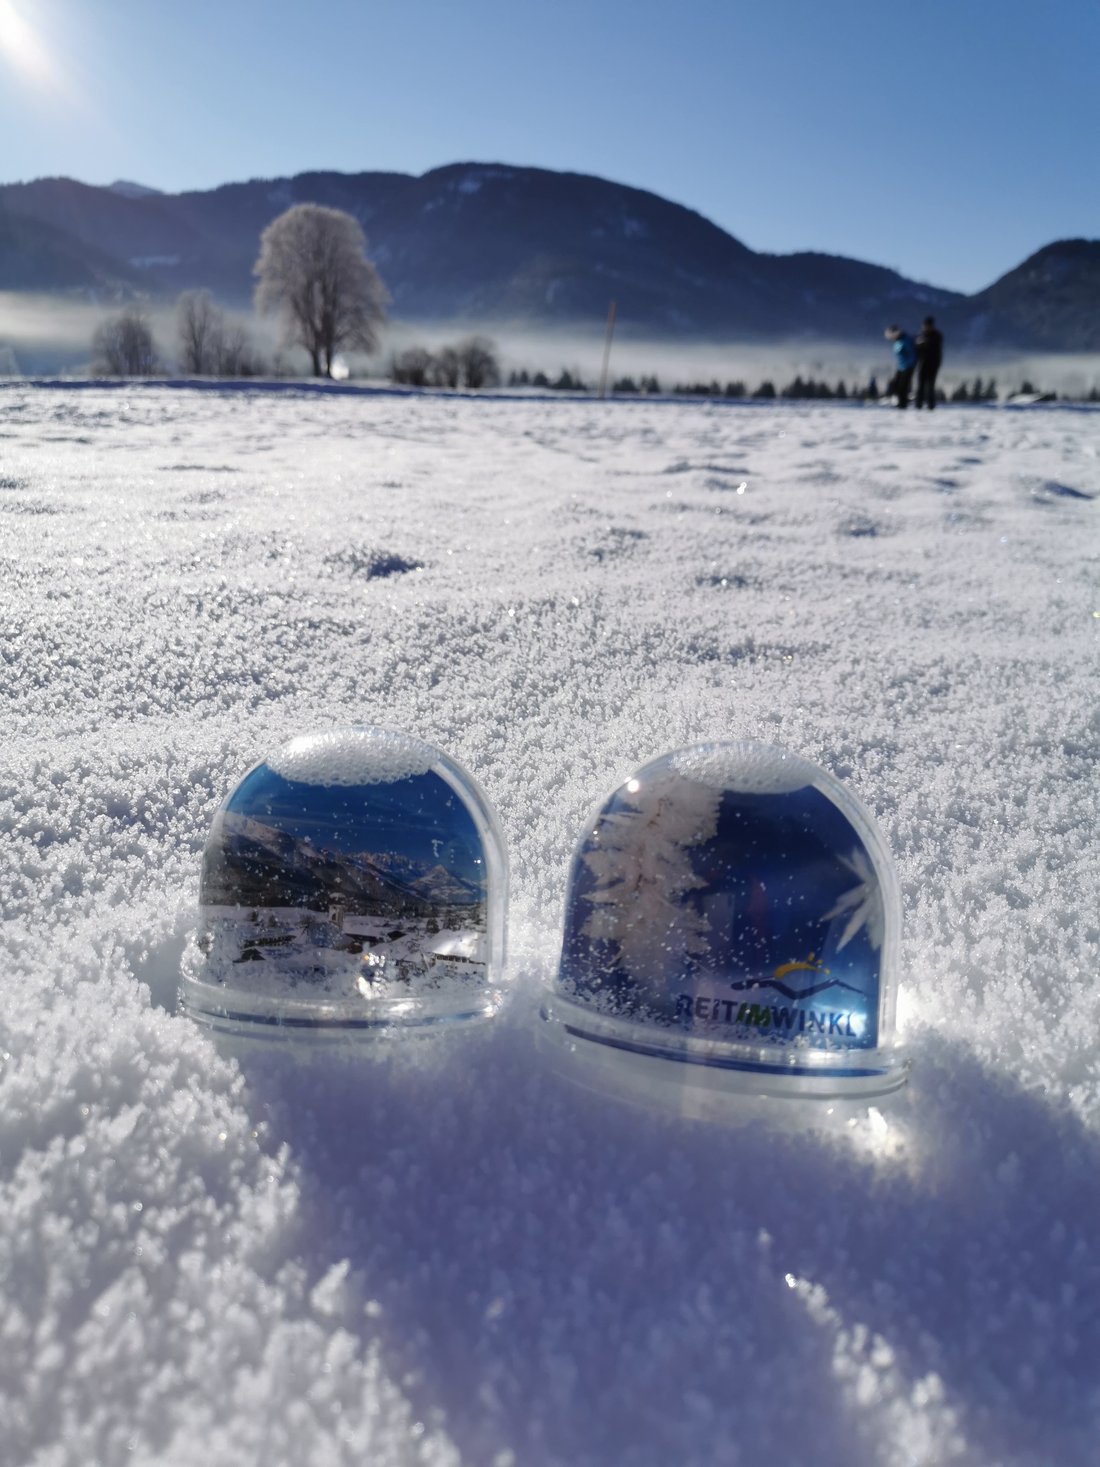 Reit im Winkl snow globes